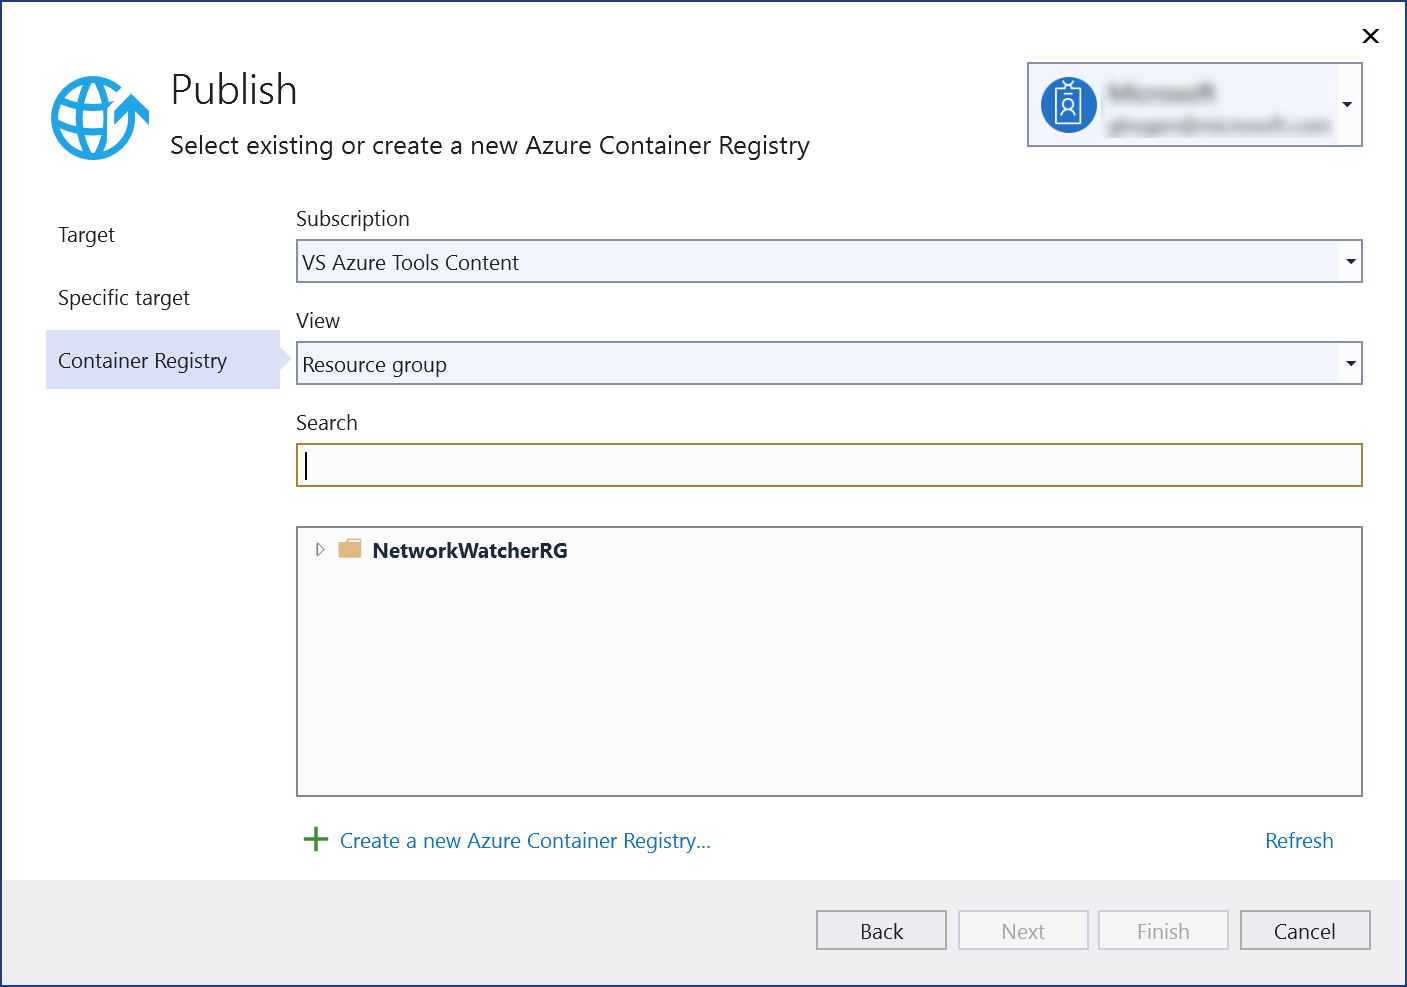 Captura de tela da caixa de diálogo Publicar — escolha Criar Registro de Contêiner do Azure.